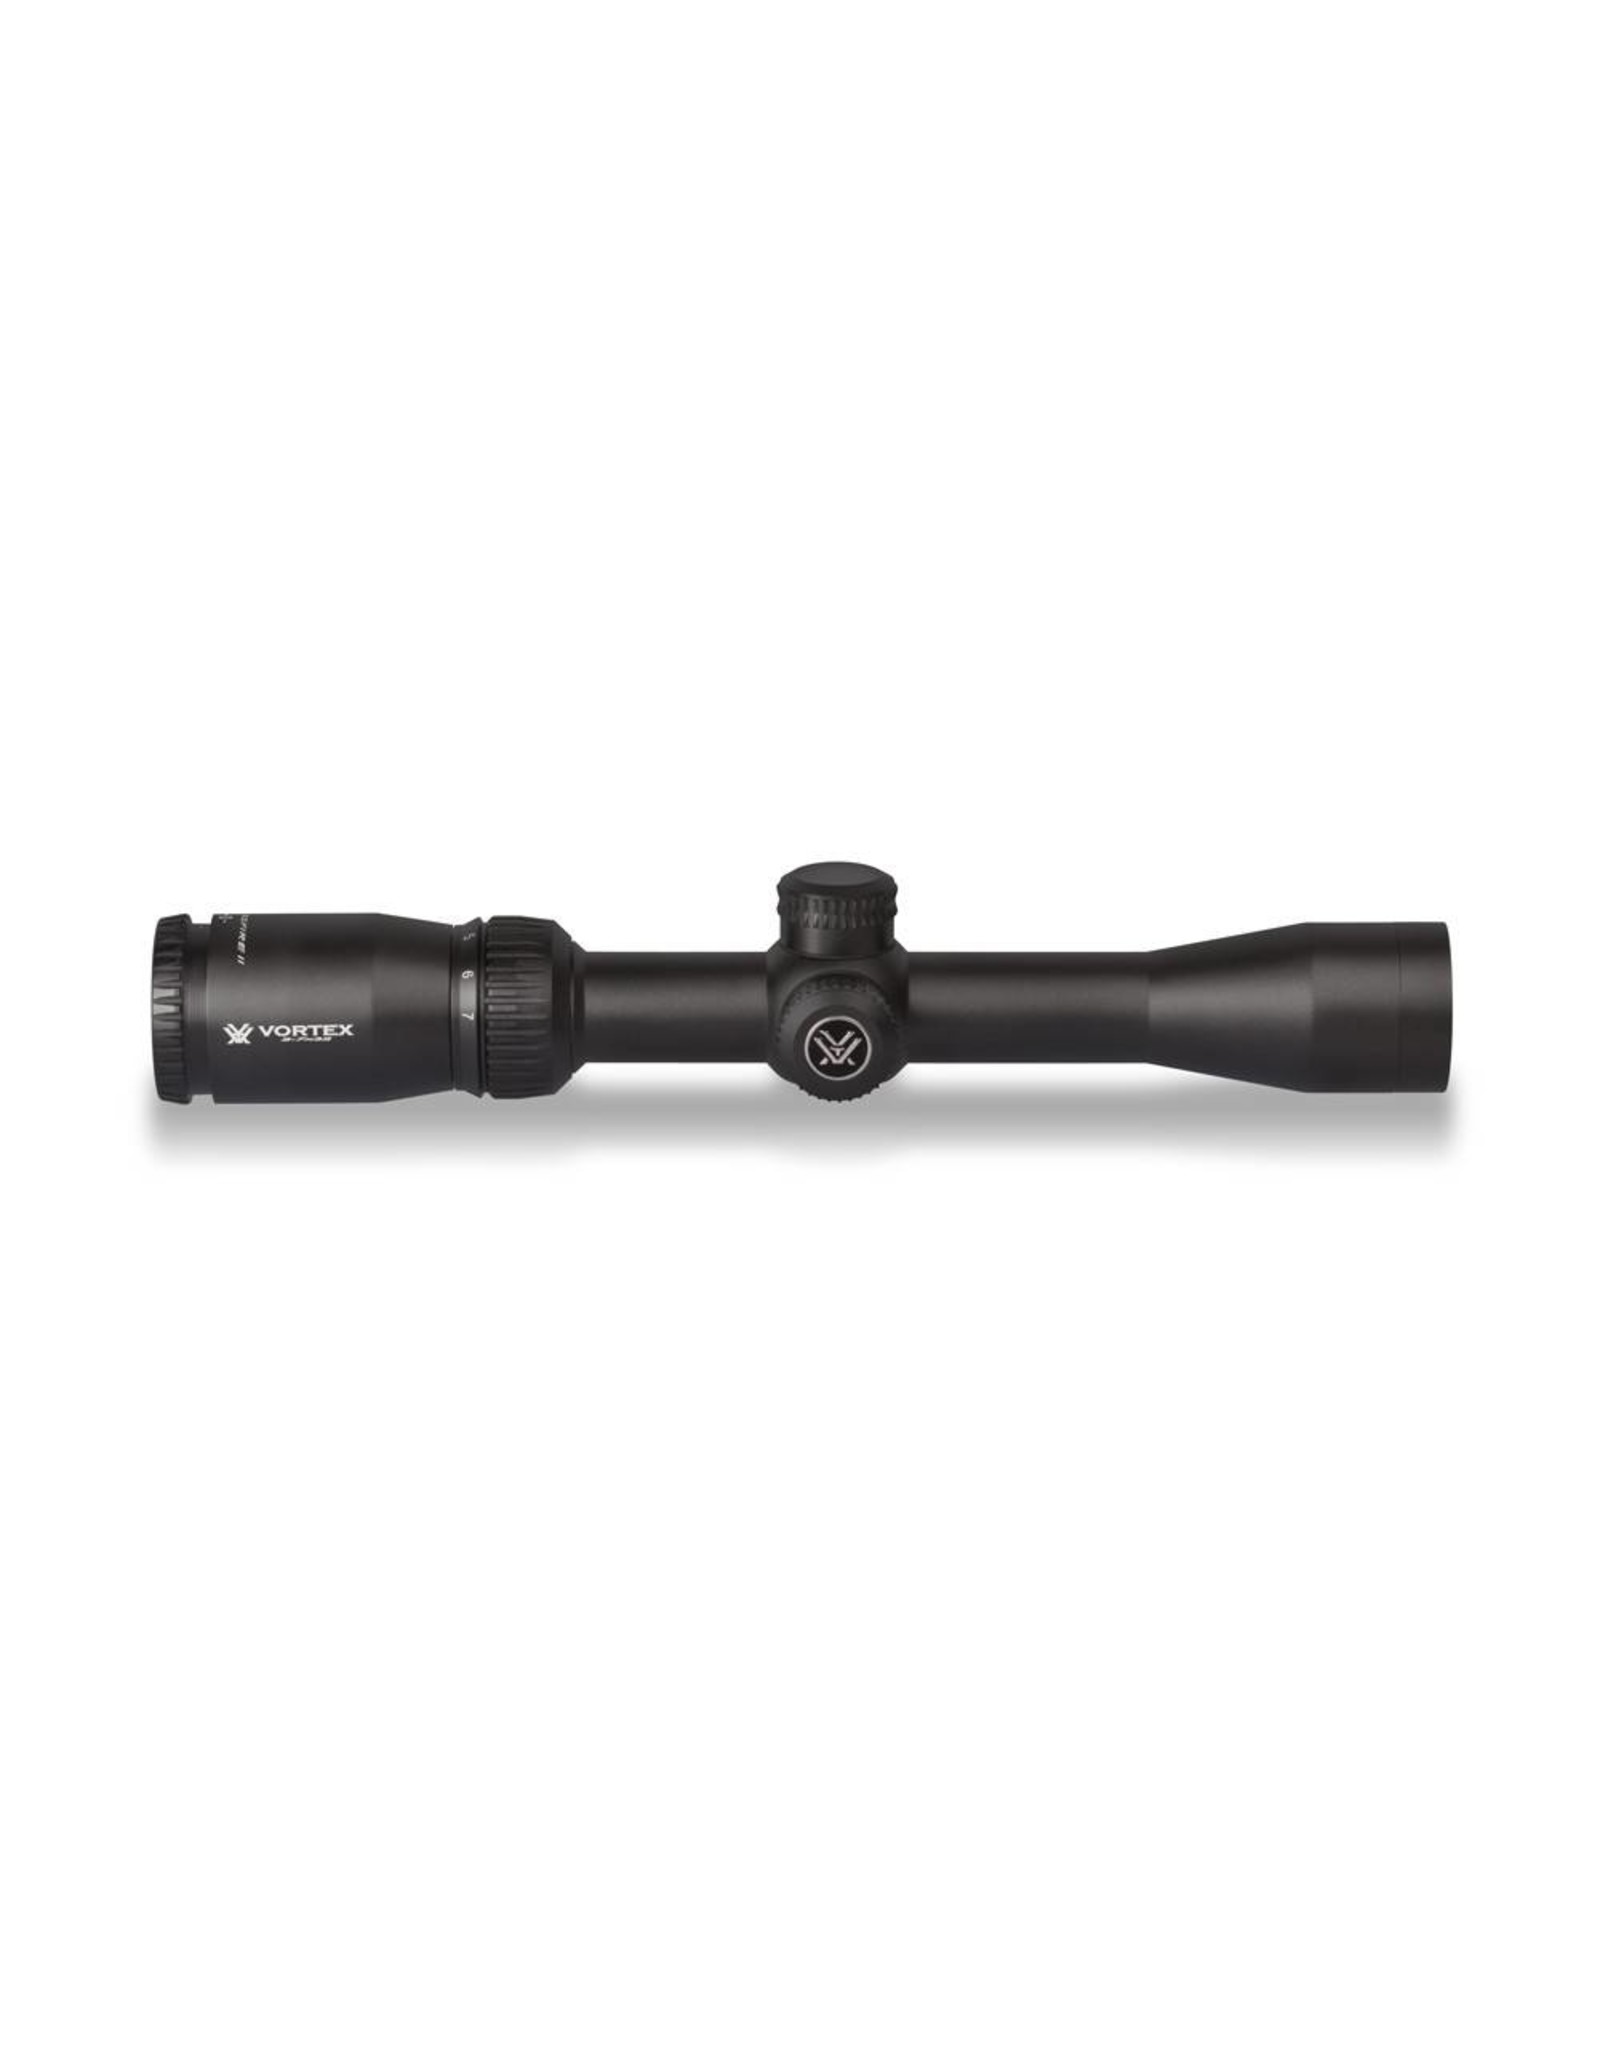 Vortex Vortex Crossfire II 2-7x32 Riflescope (1-Inch) BDC